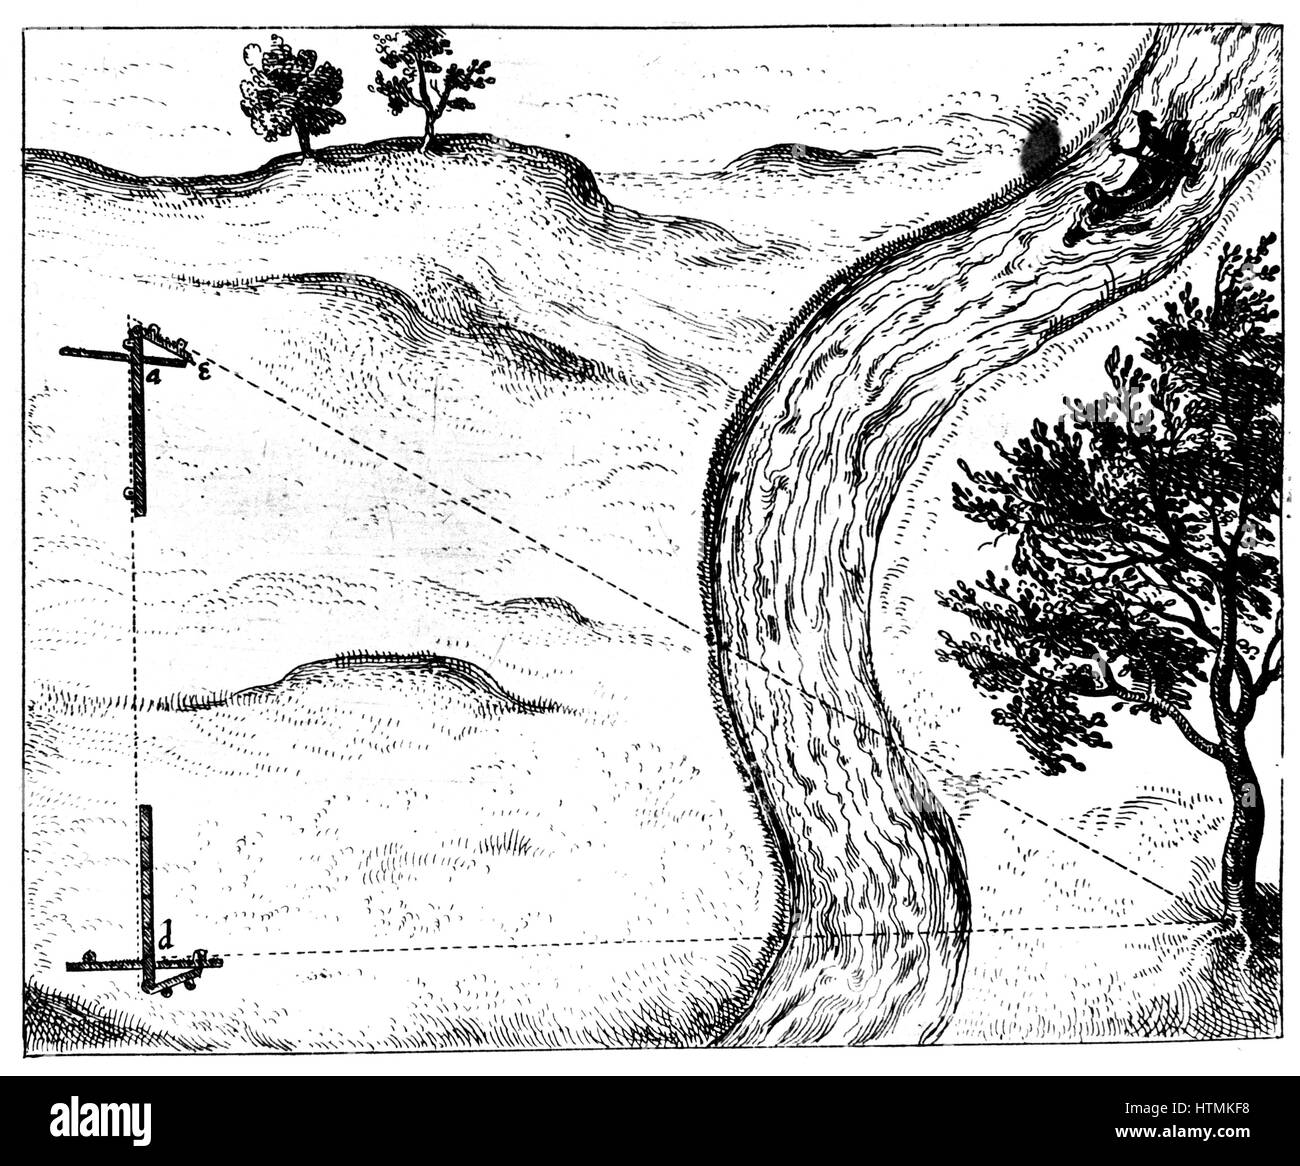 Messung der Entfernung eines Objekts unzugänglich durch Triangulation mit einem aufklappbaren Personal. Von Robert Fludd "... Utriusque Cosmi Historia", Oppenheim, 1617-1619. Gravur Stockfoto